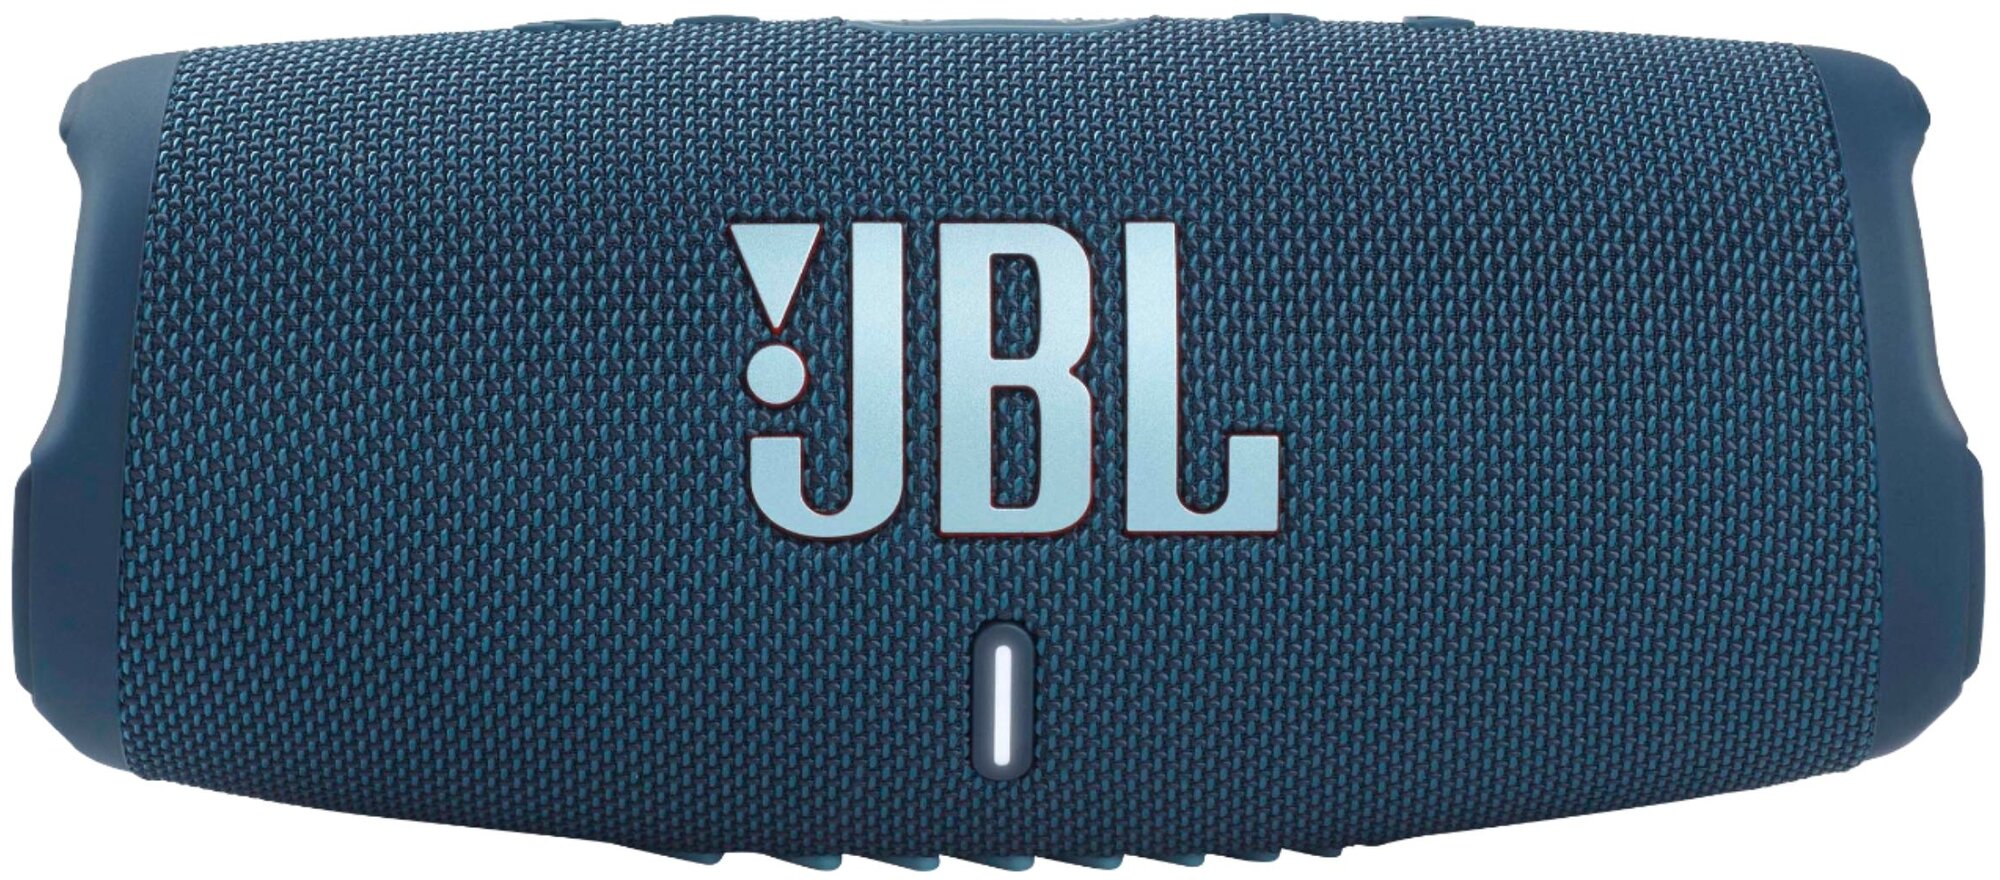 Портативная колонка JBL Charge 5, 40Вт, бирюзовый [jblcharge5teal] - фото №1